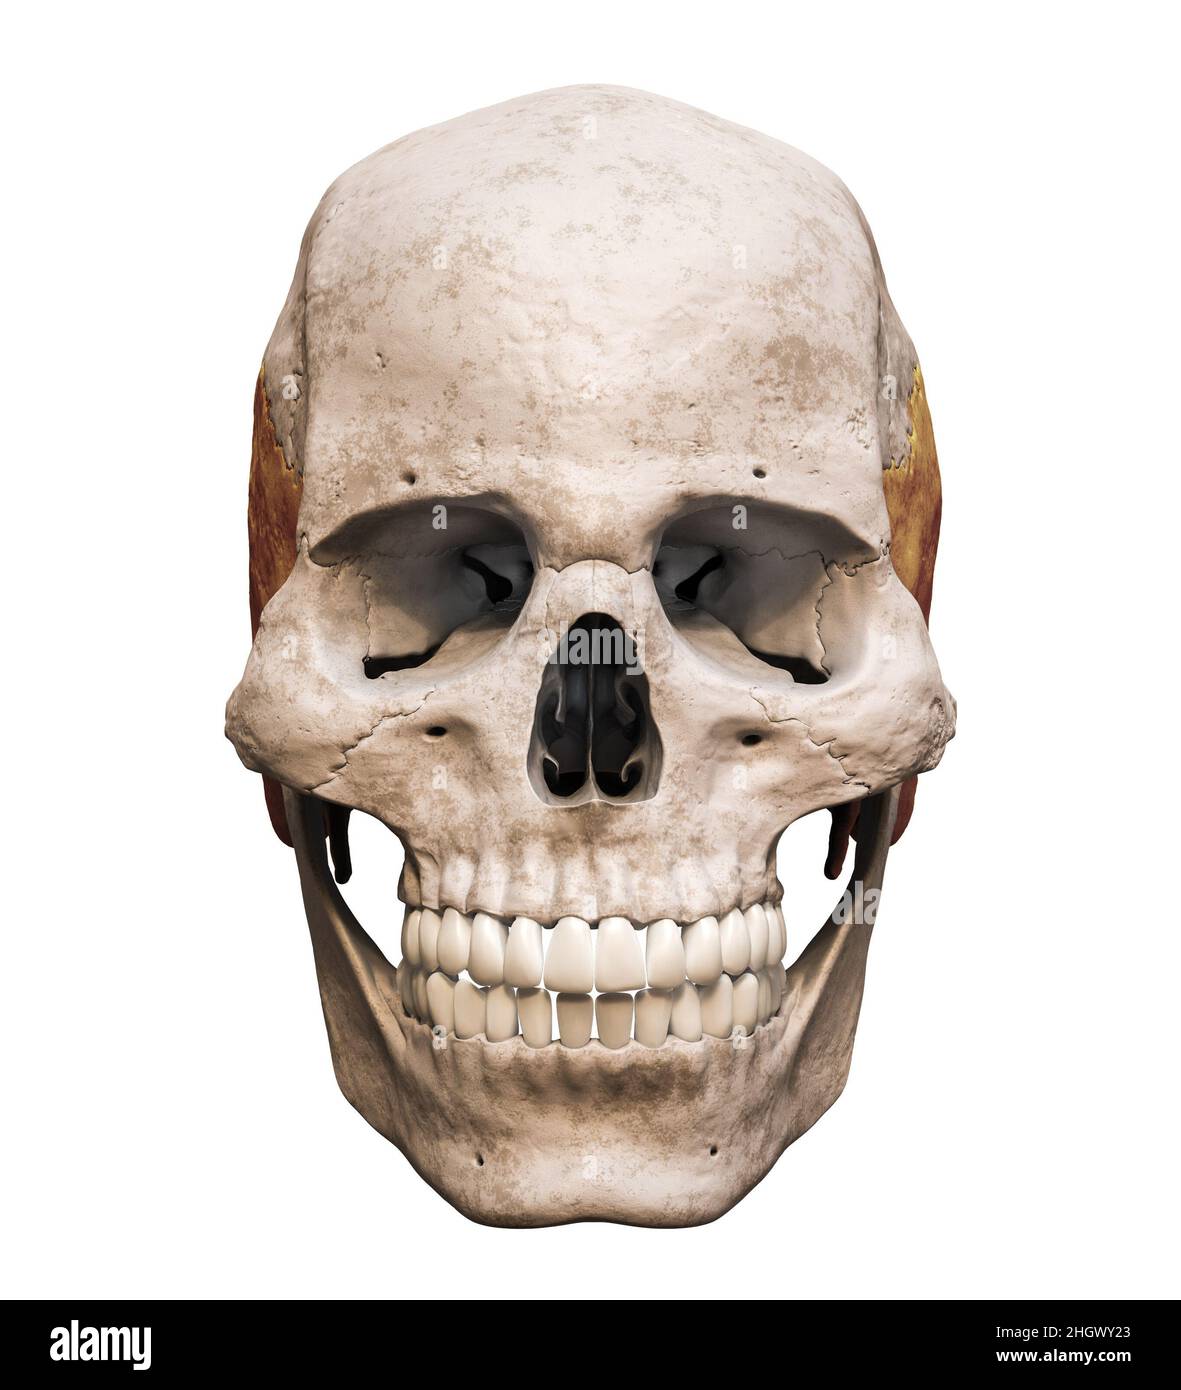 Cranio umano maschile anatomicamente preciso con vista frontale o anteriore dell'osso temporale colorata isolata su sfondo bianco con spazio di copia 3D rendering i Foto Stock